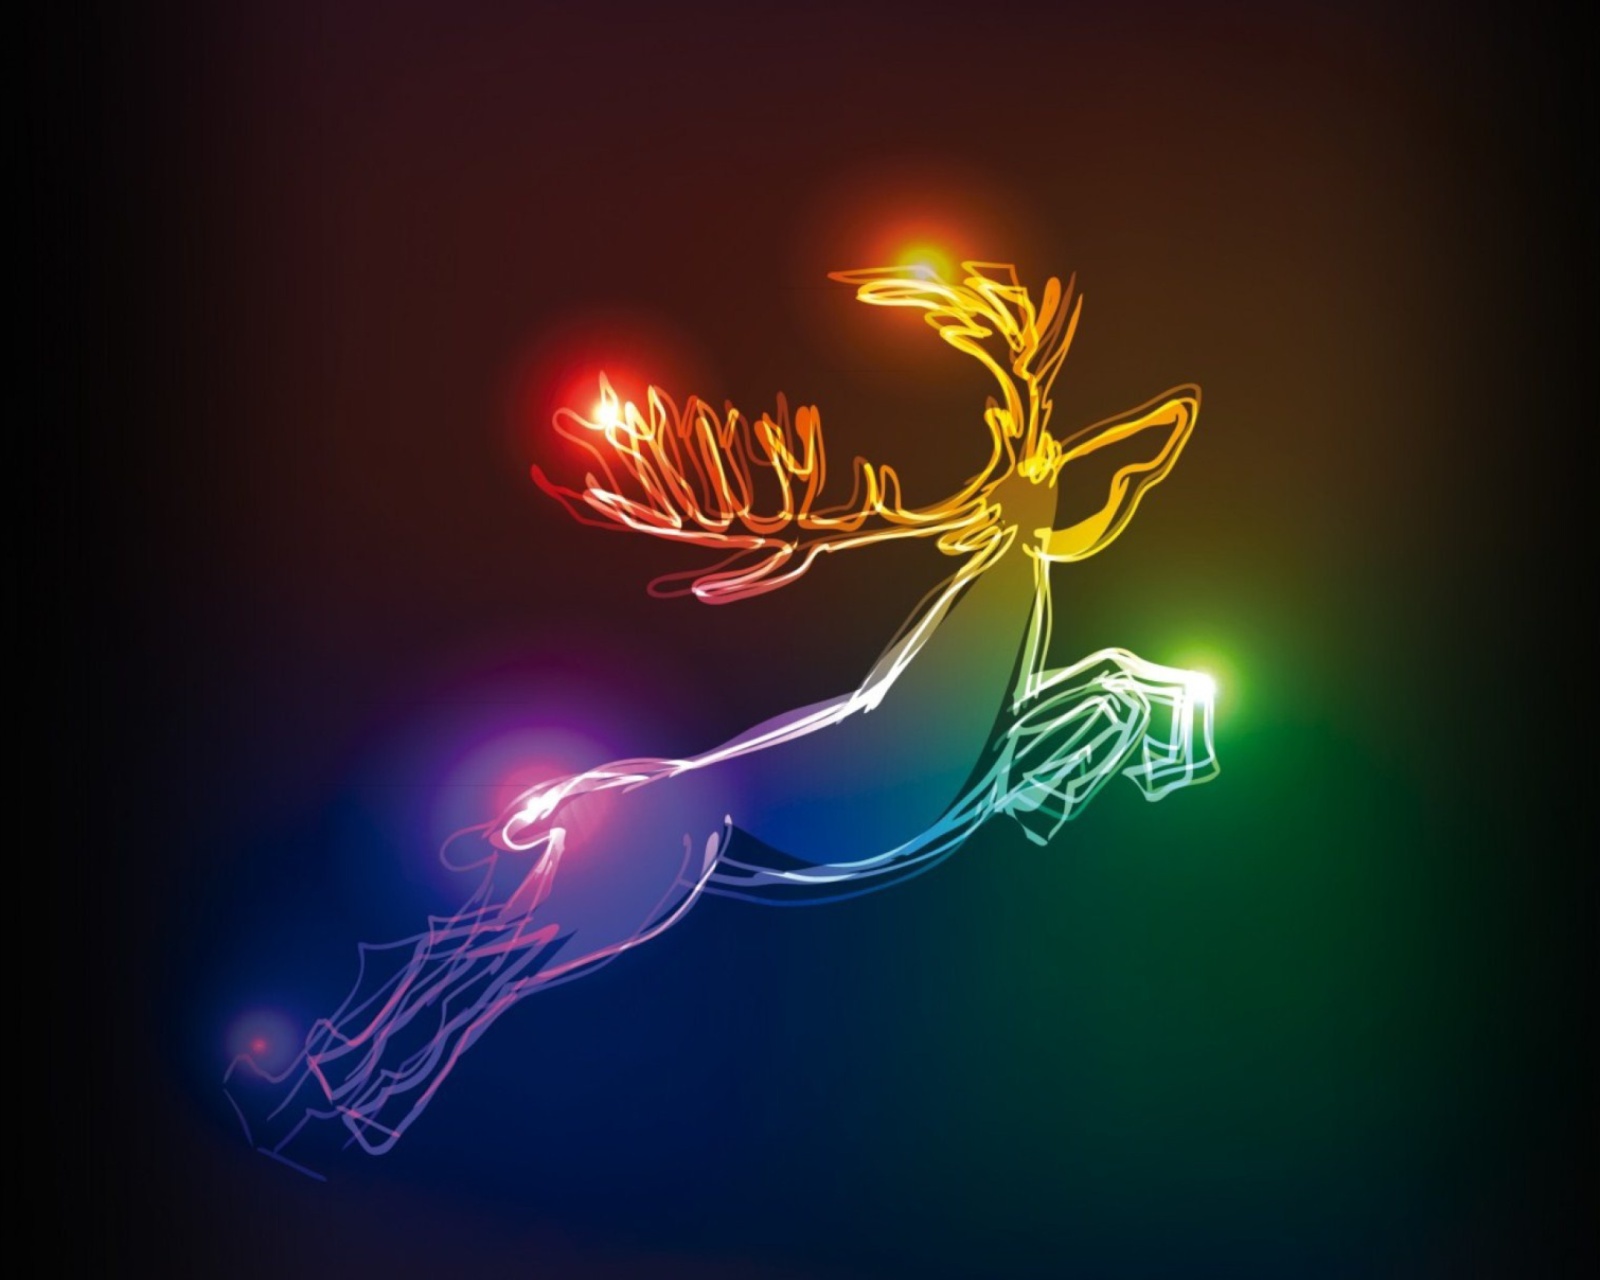 Lighted Christmas Deer wallpaper 1600x1280